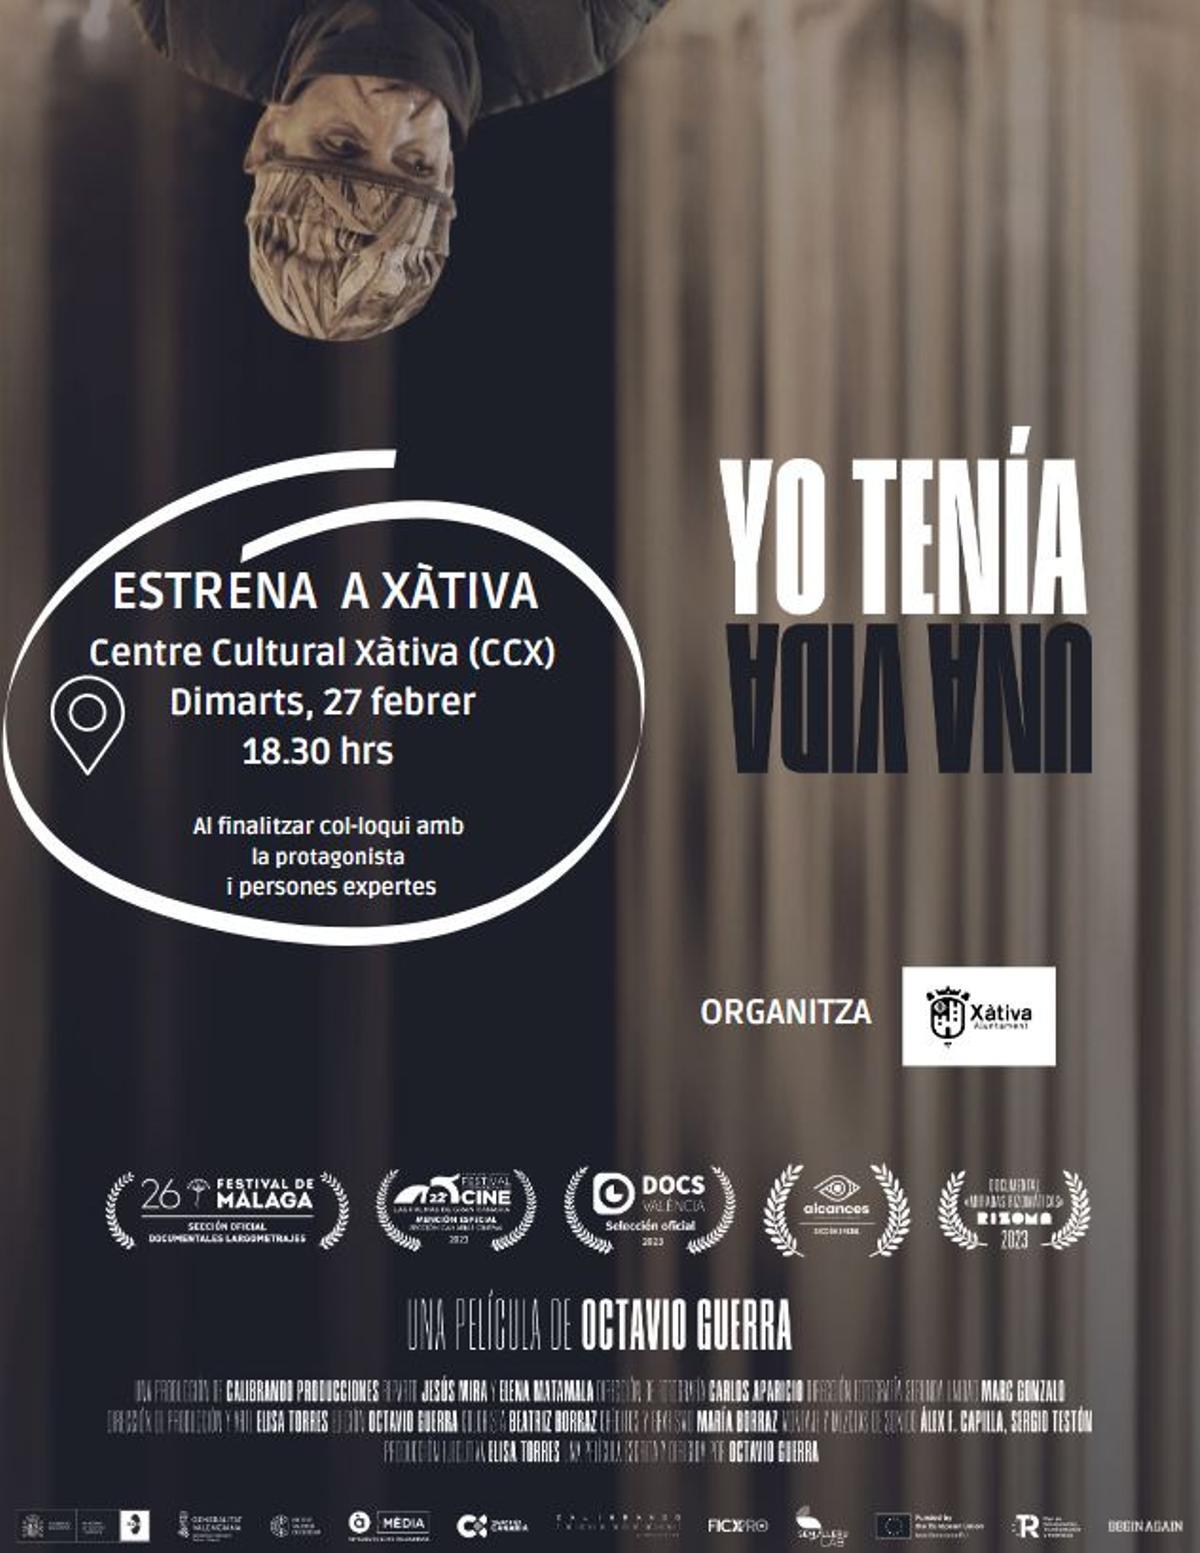 Xàtiva organiza un cine fórum sobre la realidad de las personas sin techo